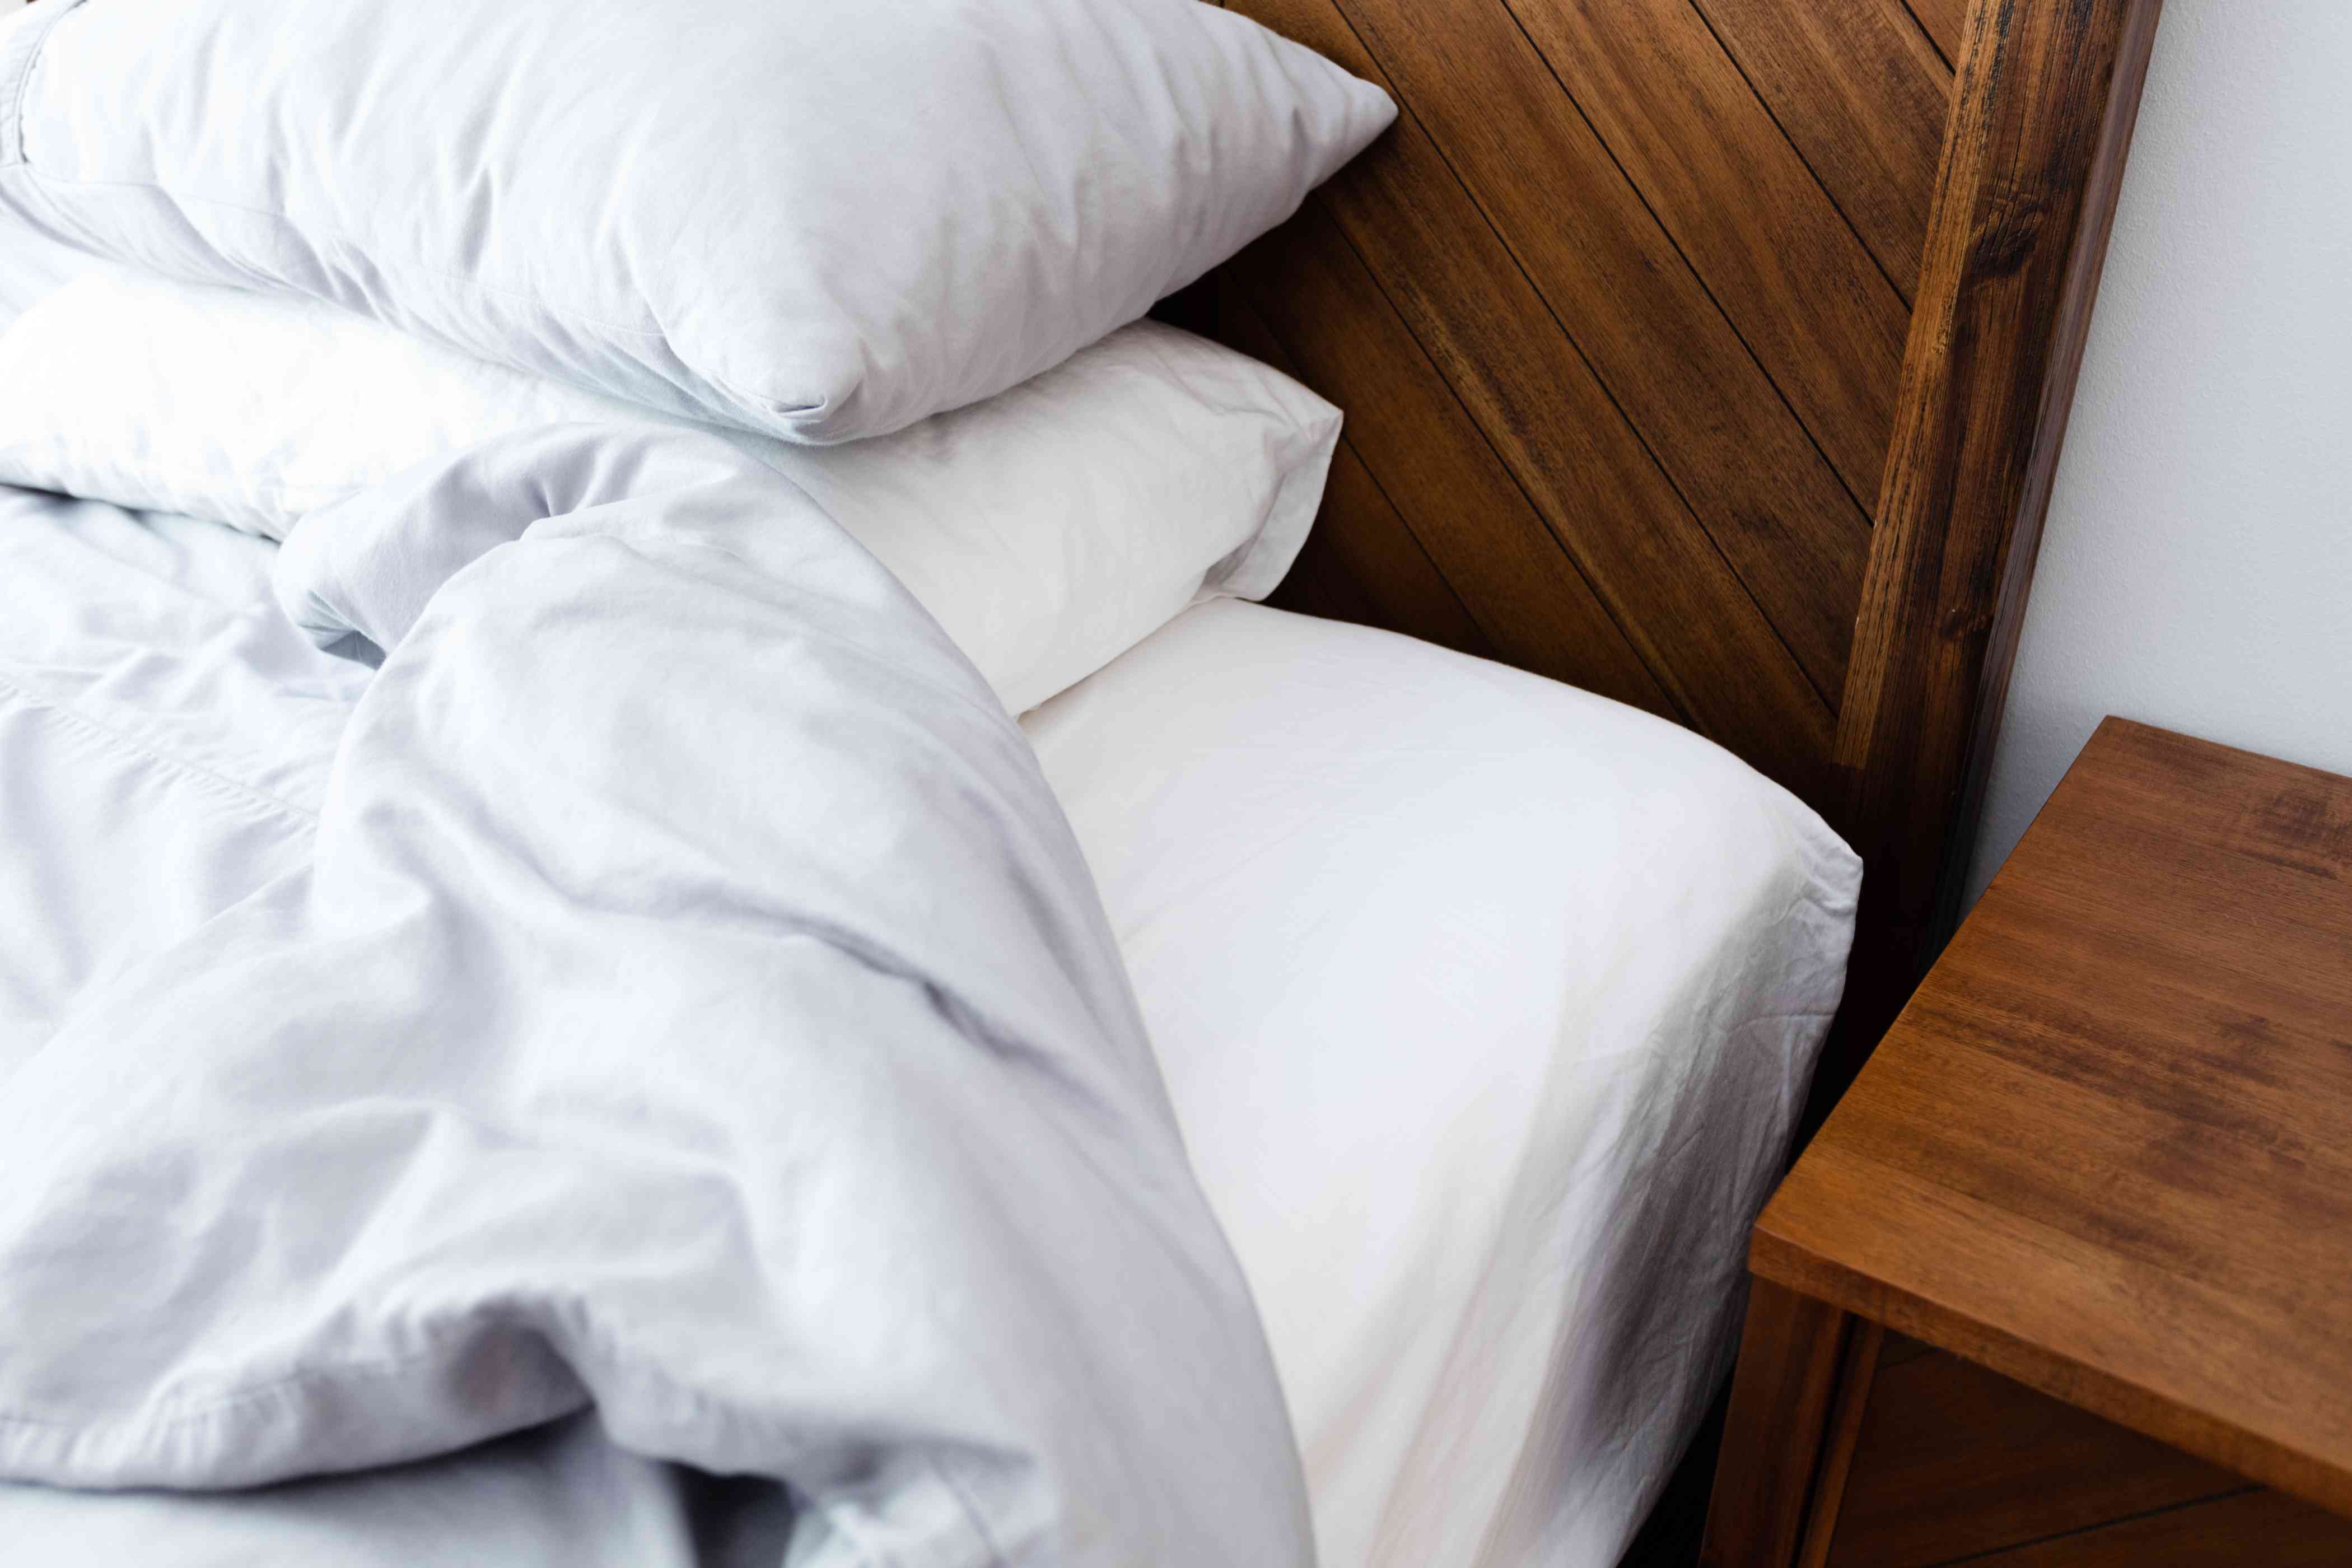 À quelle fréquence doit-on renouveler le linge de lit ? Ne prenez pas de risques pour votre santé